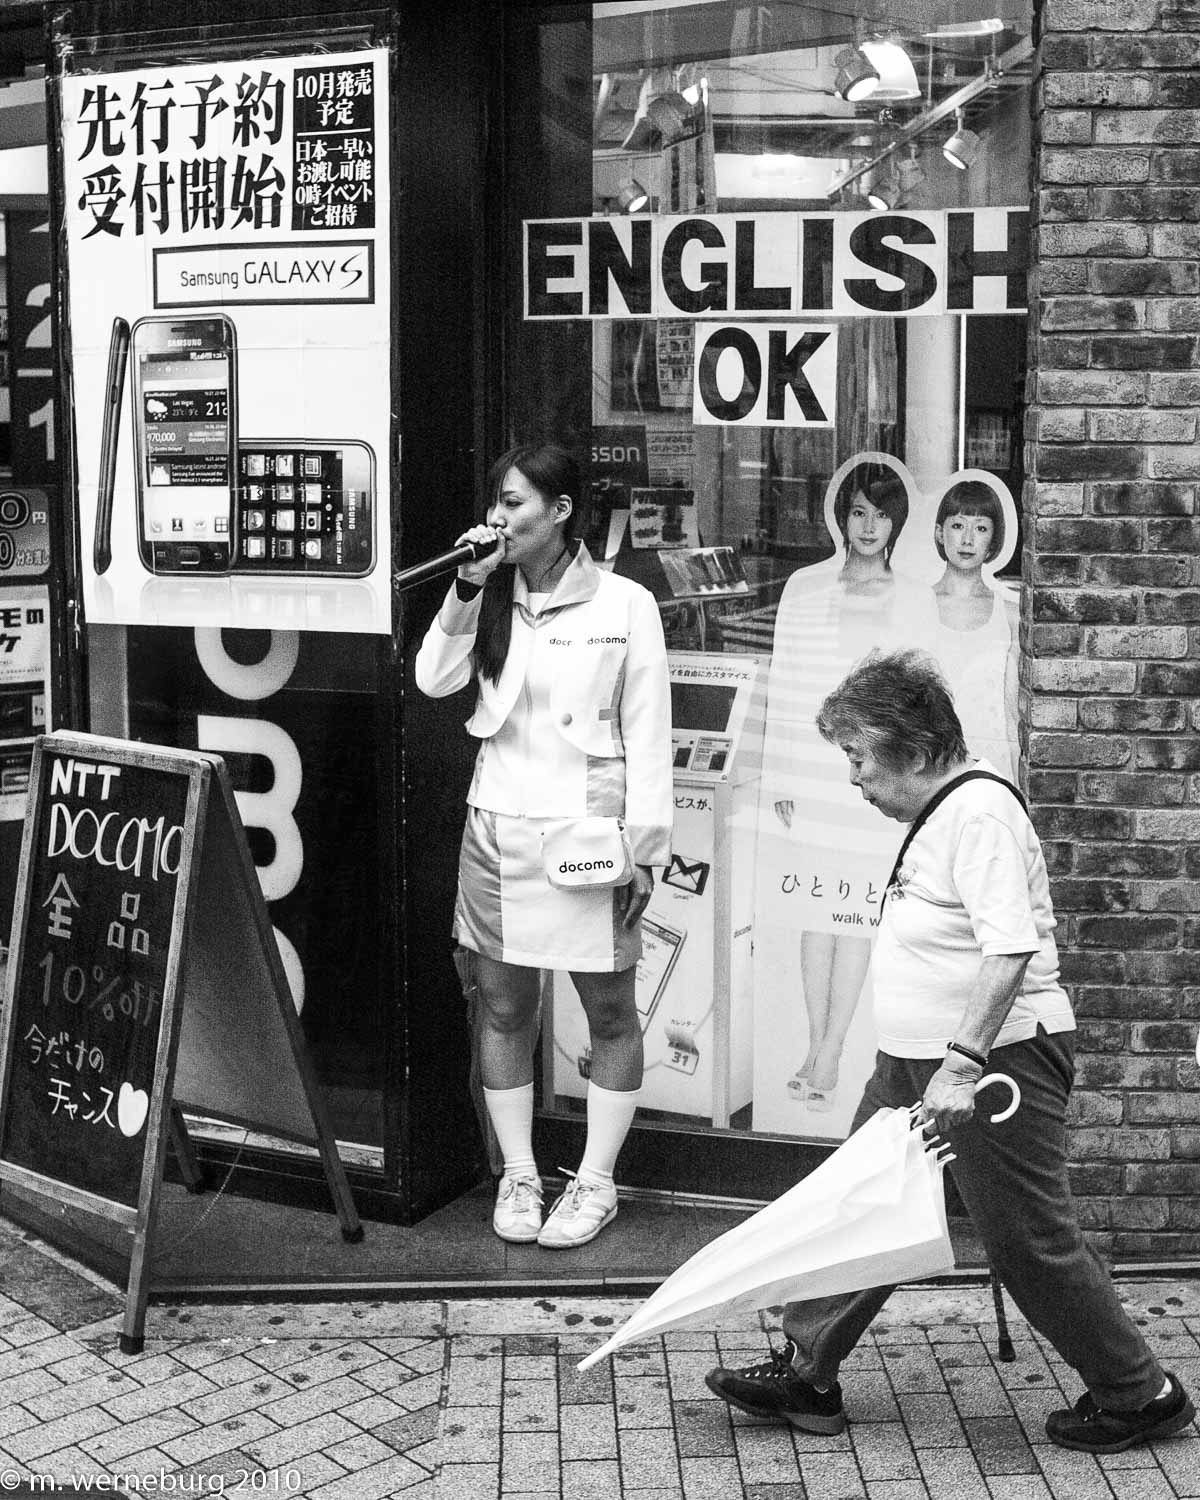 english ok in Tokyo